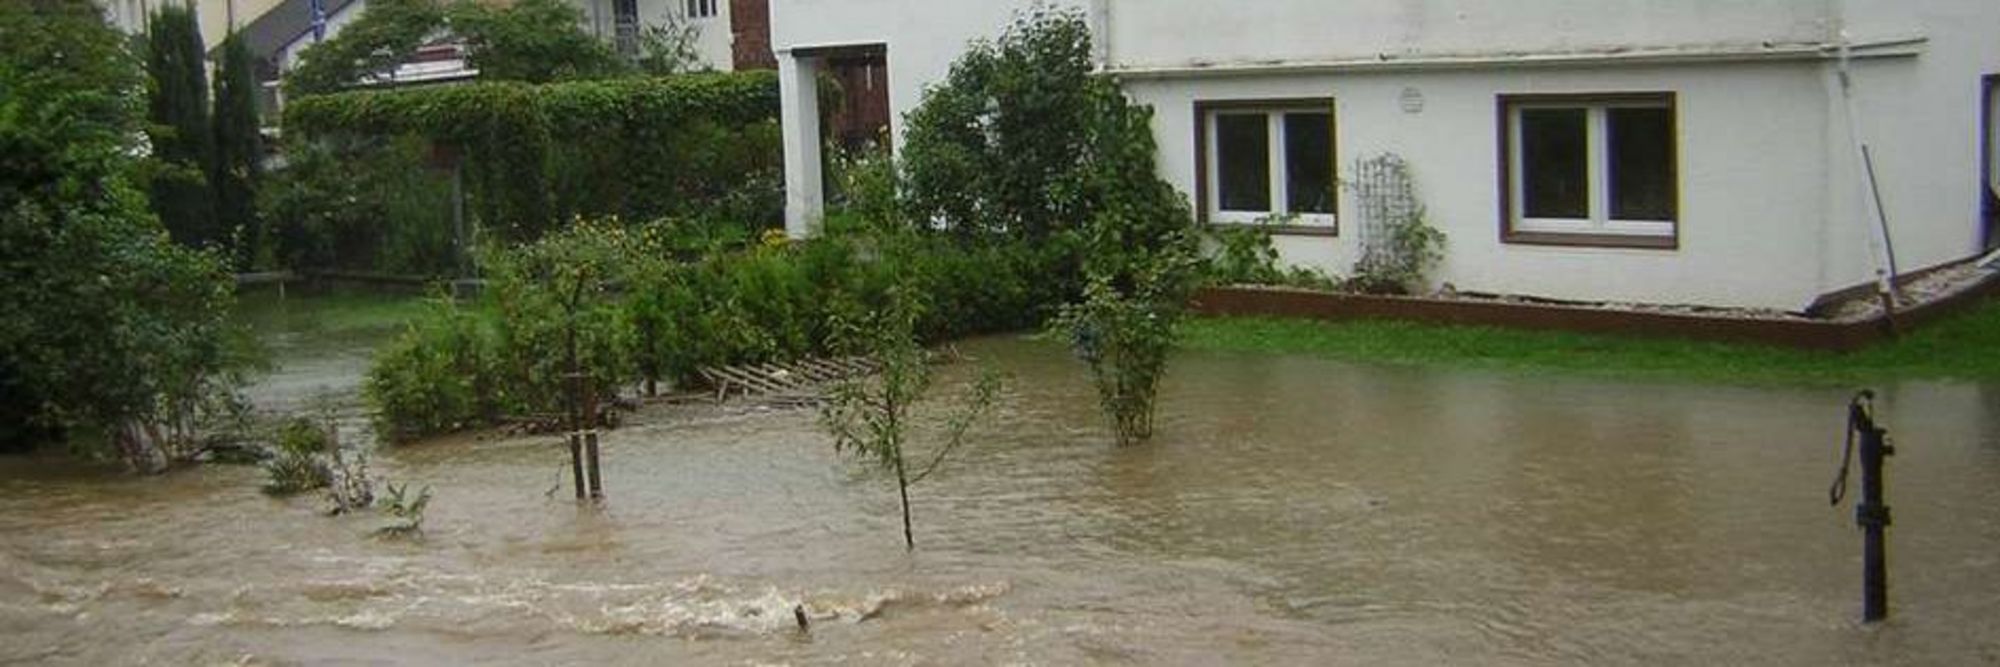 Hochwasser August 2007 im Bereich Balver Straße